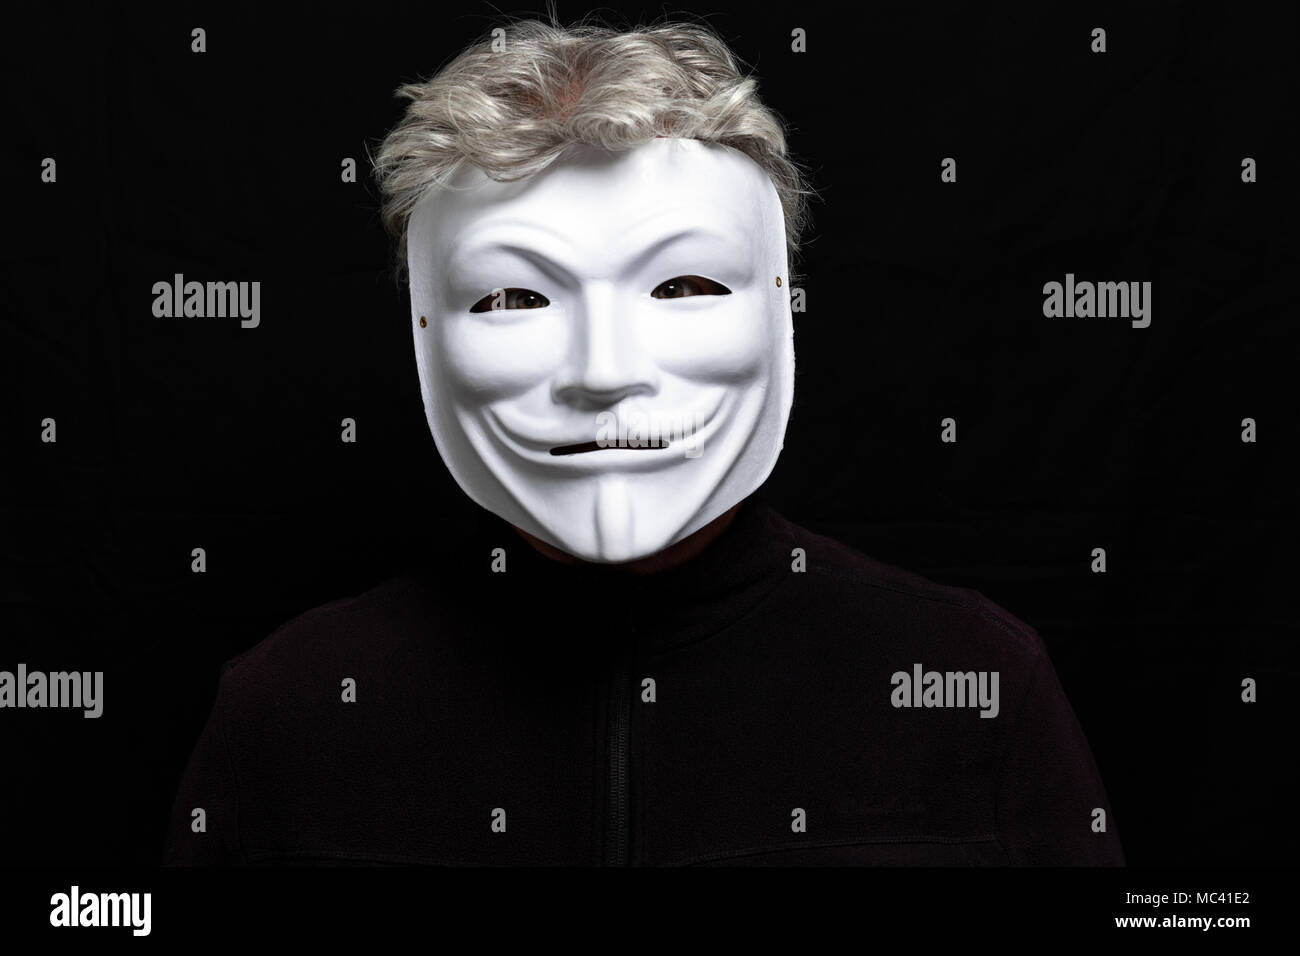 L'homme aux cheveux gris en masque anonyme Banque D'Images